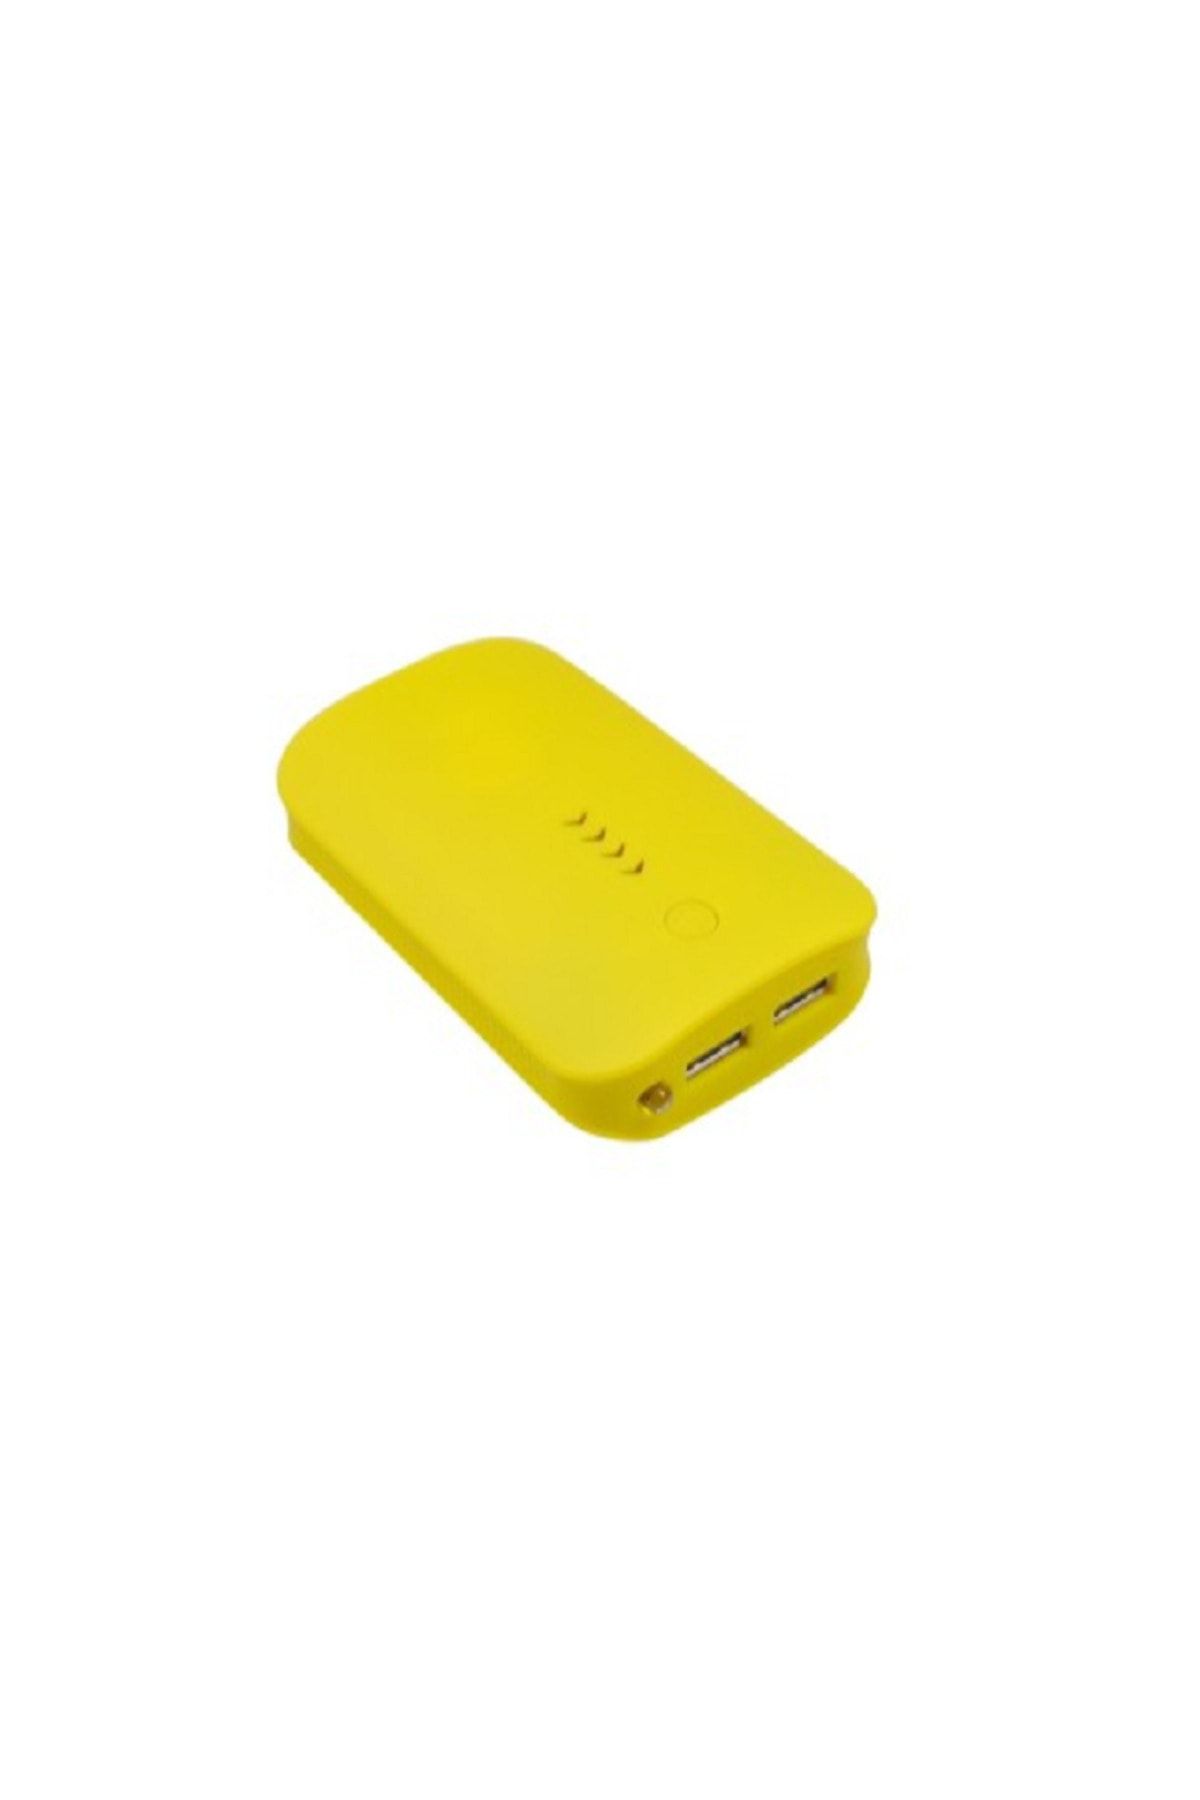 First Wei Powerbank Sarı Rubber/kauçuk/plastik/fenerli 10200 Mah Taşınabilir Şarj Cihazı